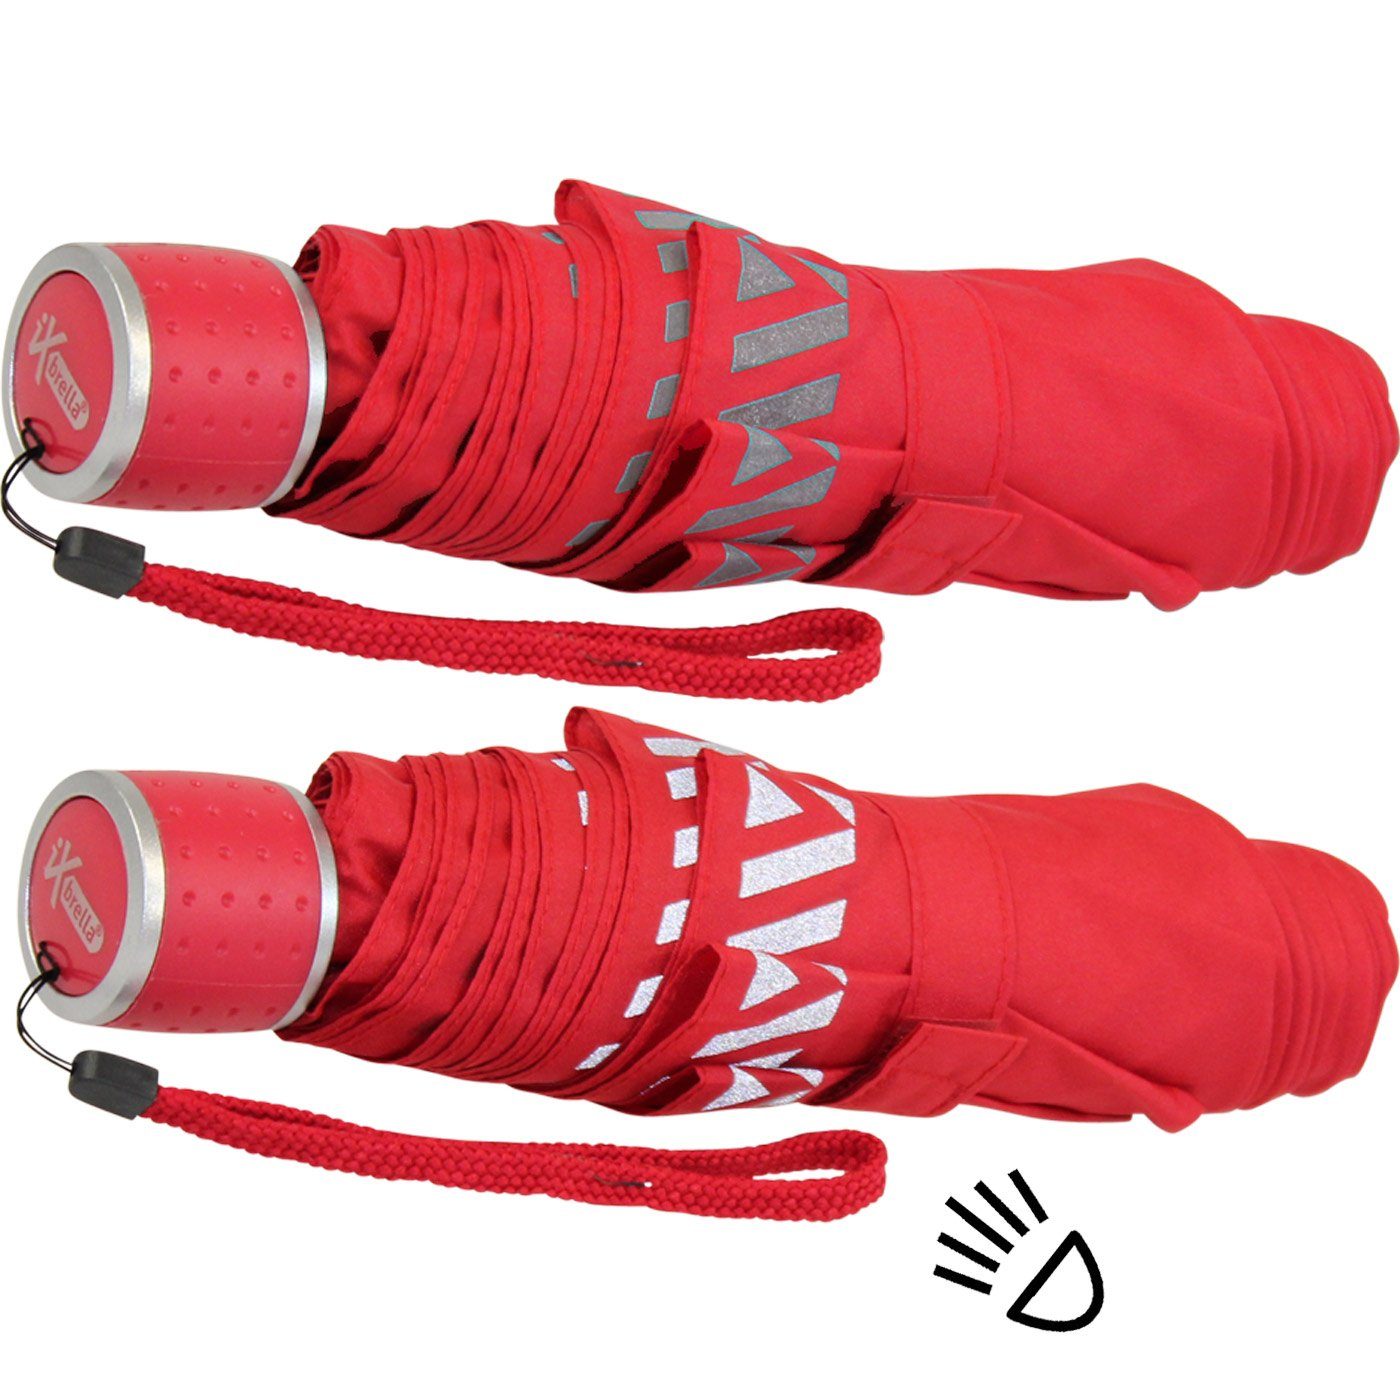 Kinderschirm reflektierend Mini Safety iX-brella rot extra Taschenregenschirm leicht, Reflex